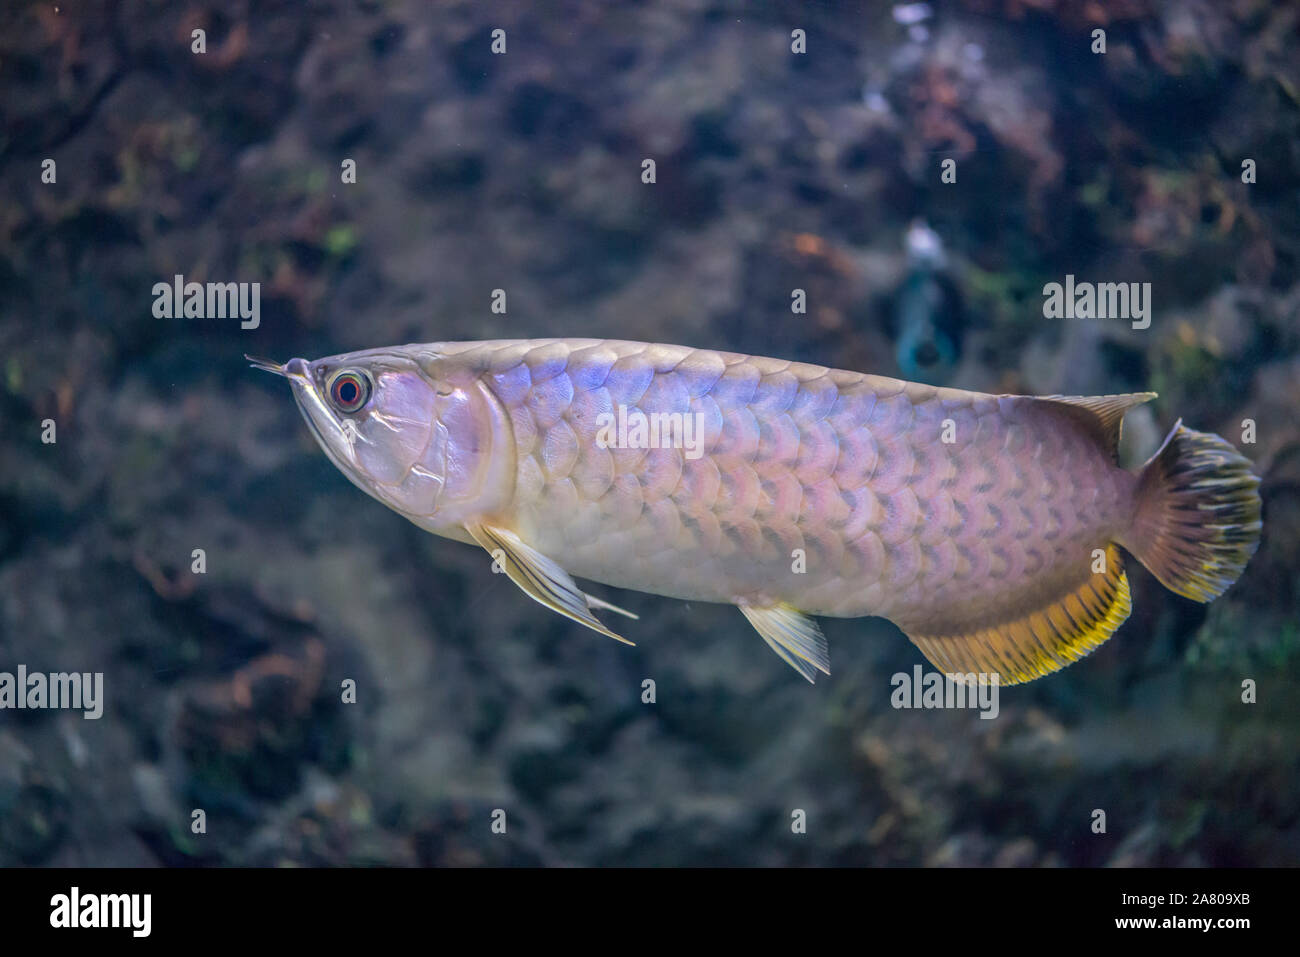 Beautiful fish Arowana or Asian bonytongue Arowana. Science name is Scleropages formosus Stock Photo